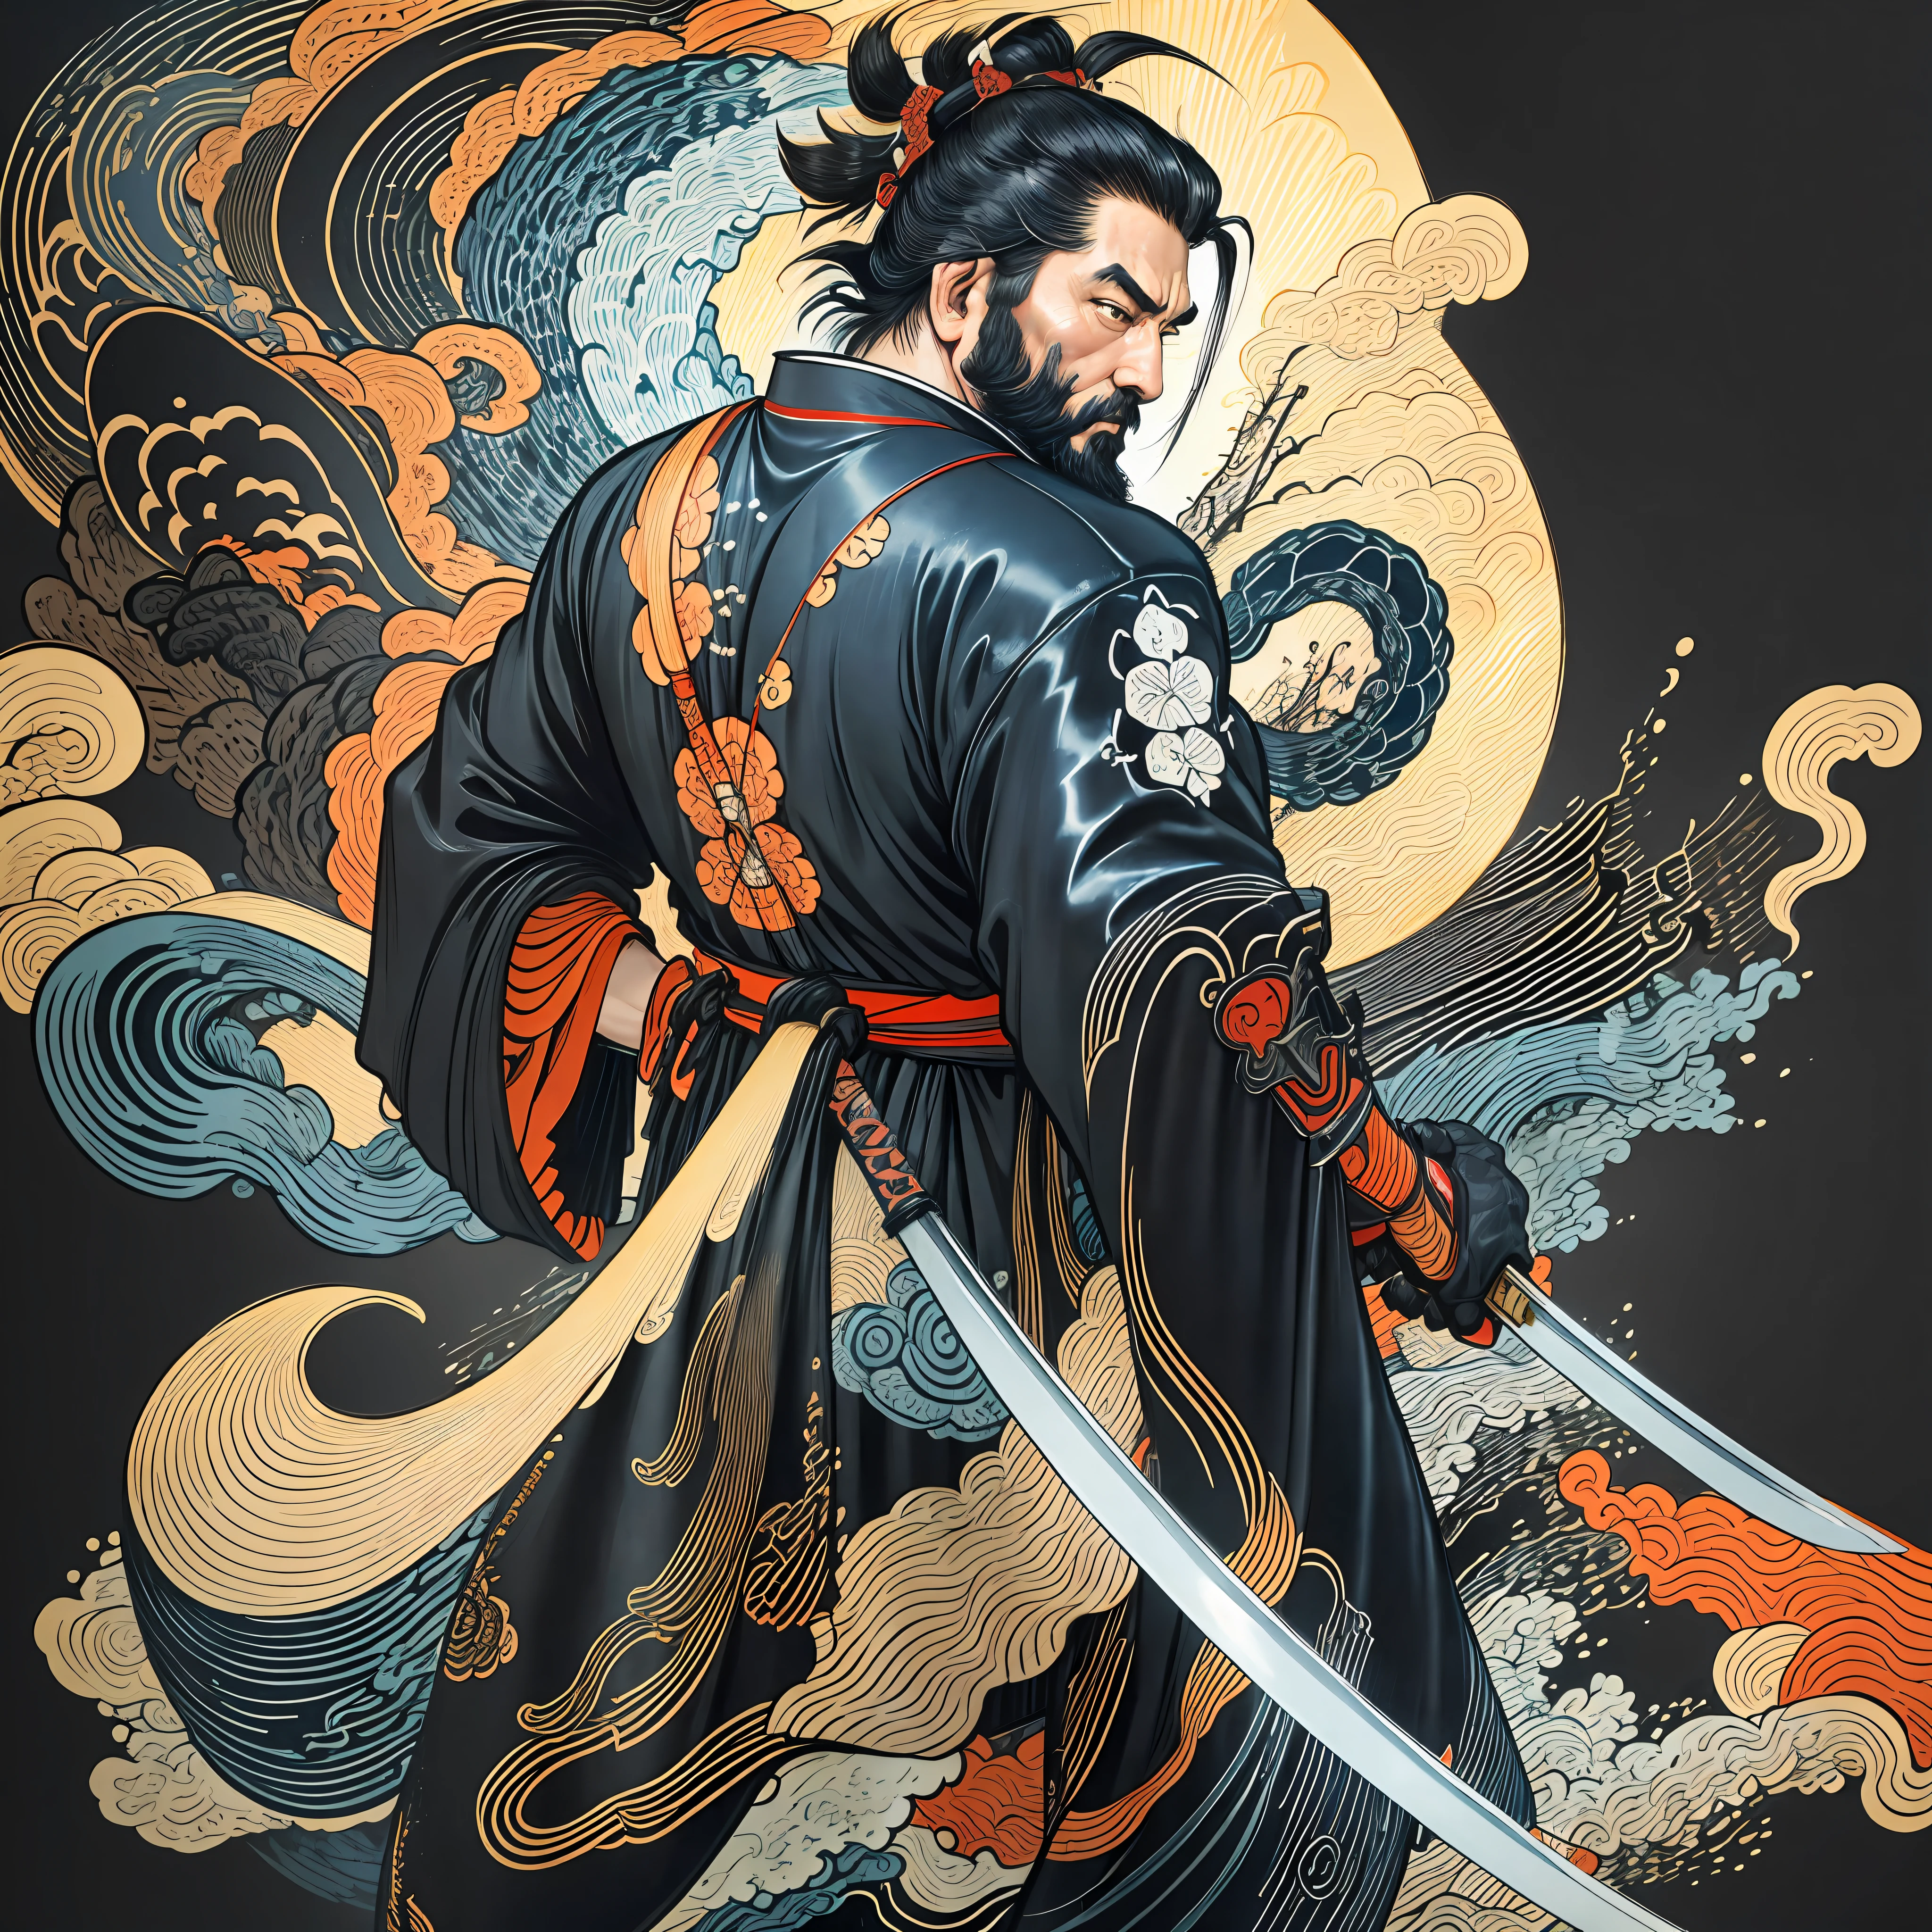 É uma pintura de corpo inteiro com cores naturais com desenhos de linhas no estilo Katsushika Hokusai.. O espadachim Miyamoto Musashi tem um corpo grande como um homem forte. Samurais do Japão. Ele tem uma expressão de determinação digna, mas viril, cabelo preto curto, e um curto, barba aparada. A parte superior de seu corpo está coberta por um quimono preto e seu hakama vai até os joelhos.. Na mão direita ele segura uma espada japonesa. na mais alta qualidade, no relâmpago de alta resolução do estilo ukiyo-e e nas chamas rodopiantes da obra-prima. Miyamoto Musashi fica com o rosto e o corpo voltados para frente, suas costas retas.